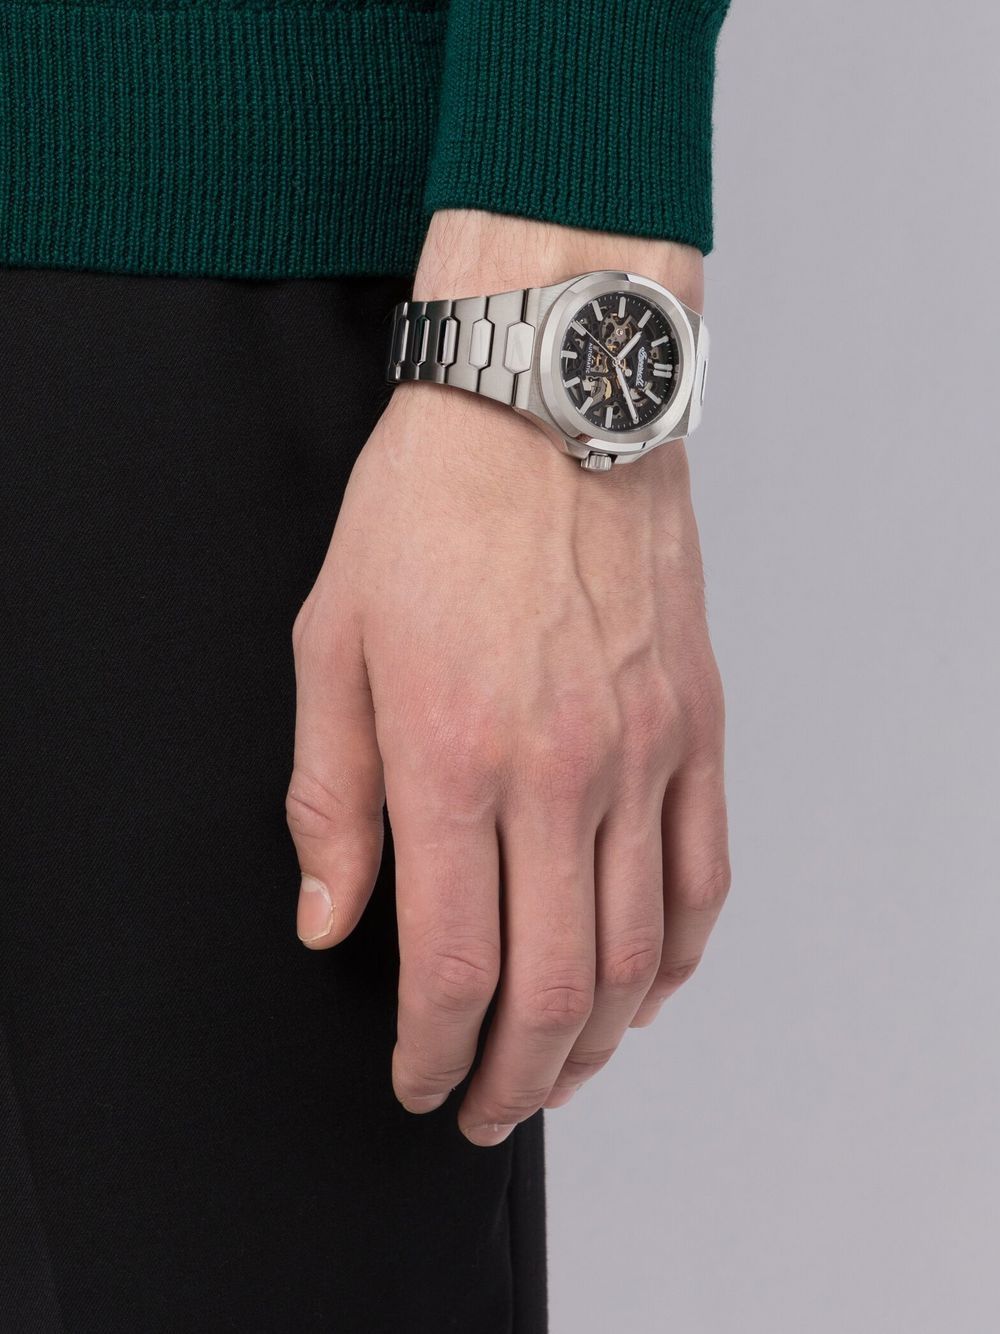 Ingersoll Watches The Catalina horloge - Zilver